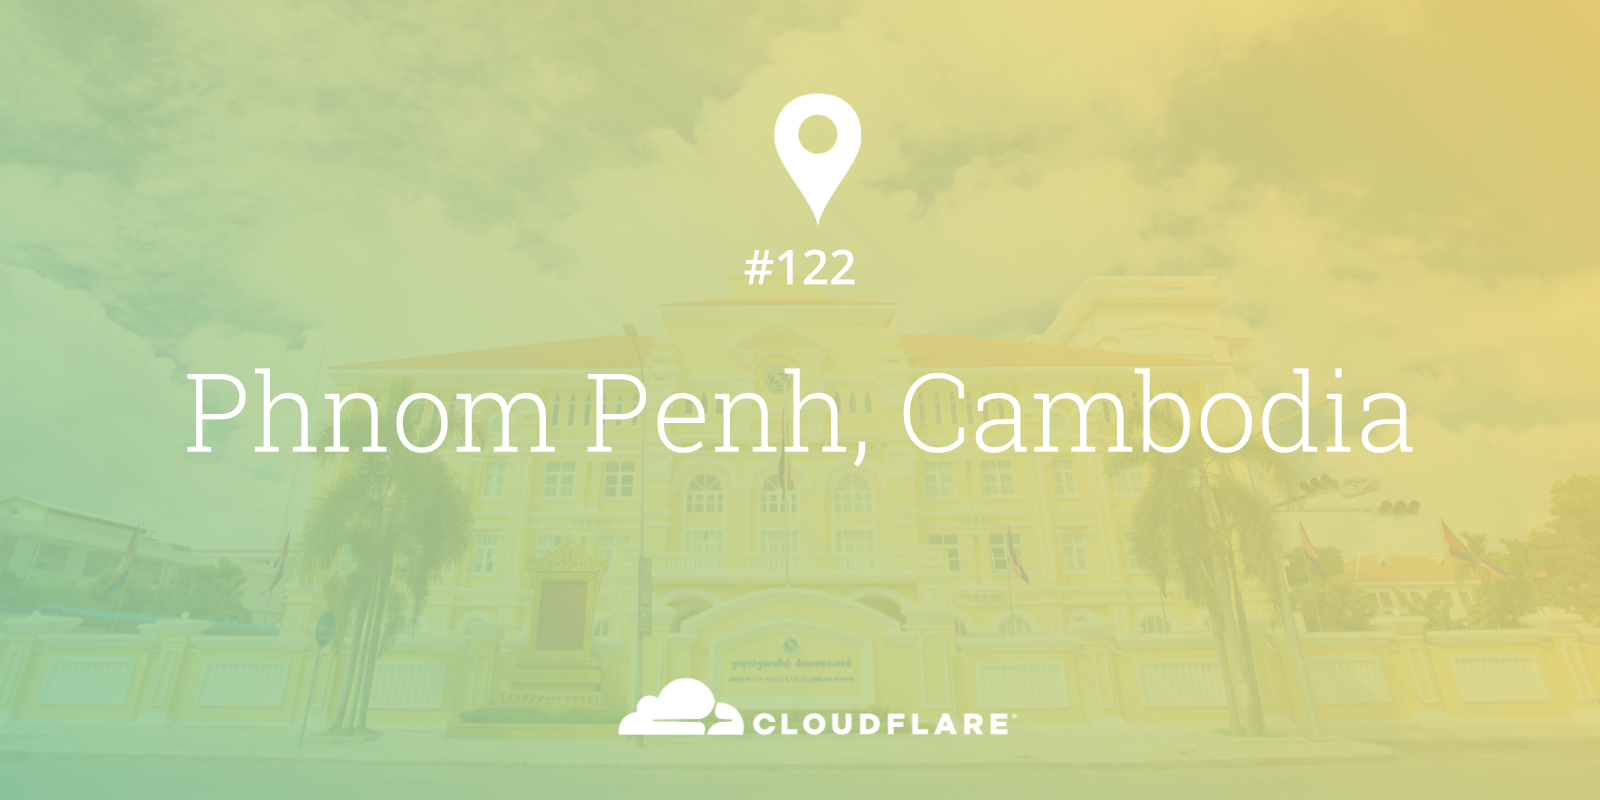 ជំរាបសួរ! - Phnom Penh: Cloudflare’s 122nd Data Center